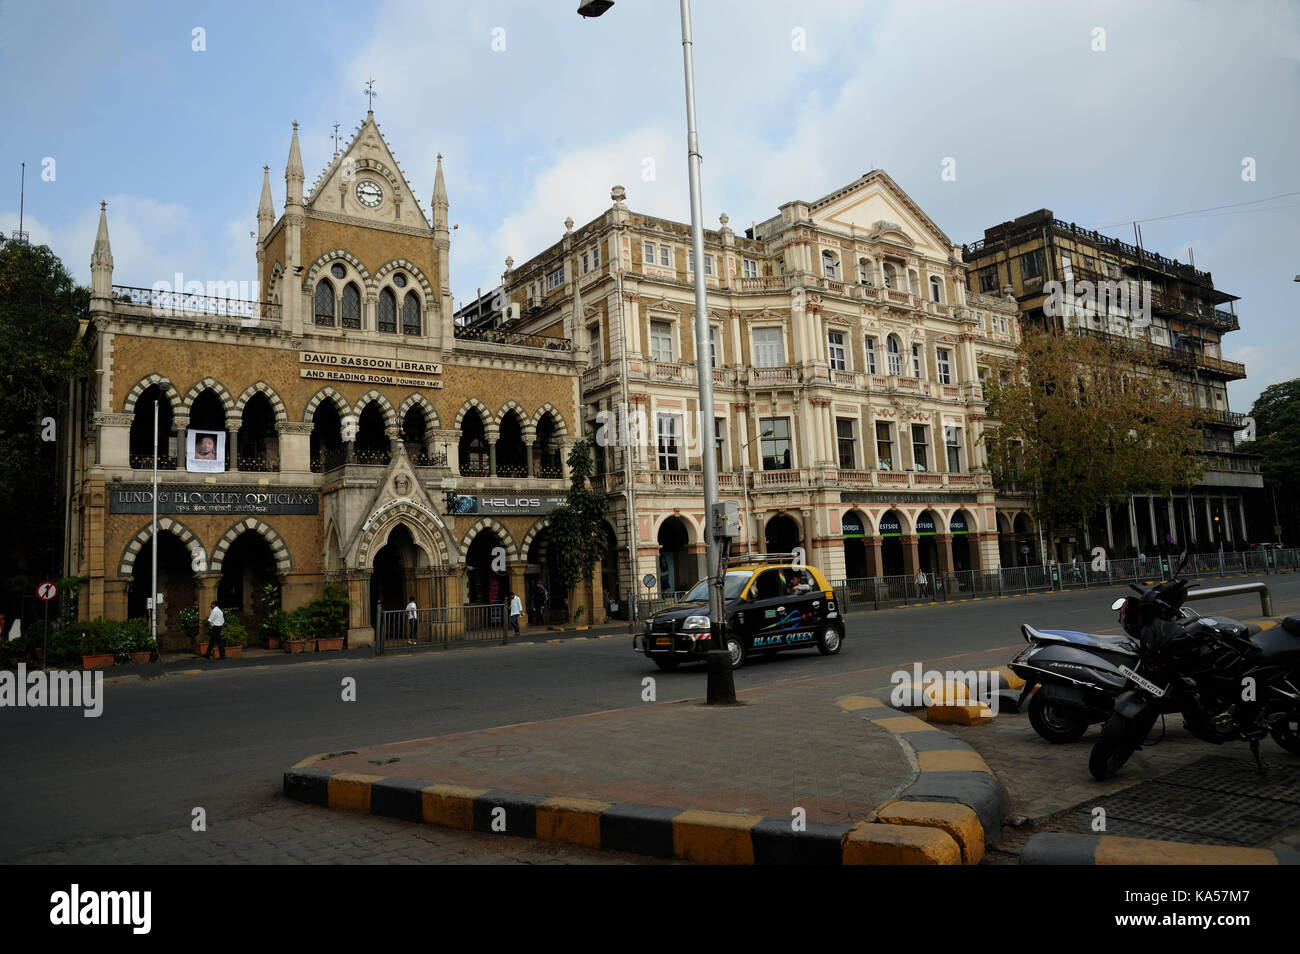 David sassoon et l'esplanade de la bibliothèque, Mumbai, Maharashtra, Inde, Asie Banque D'Images